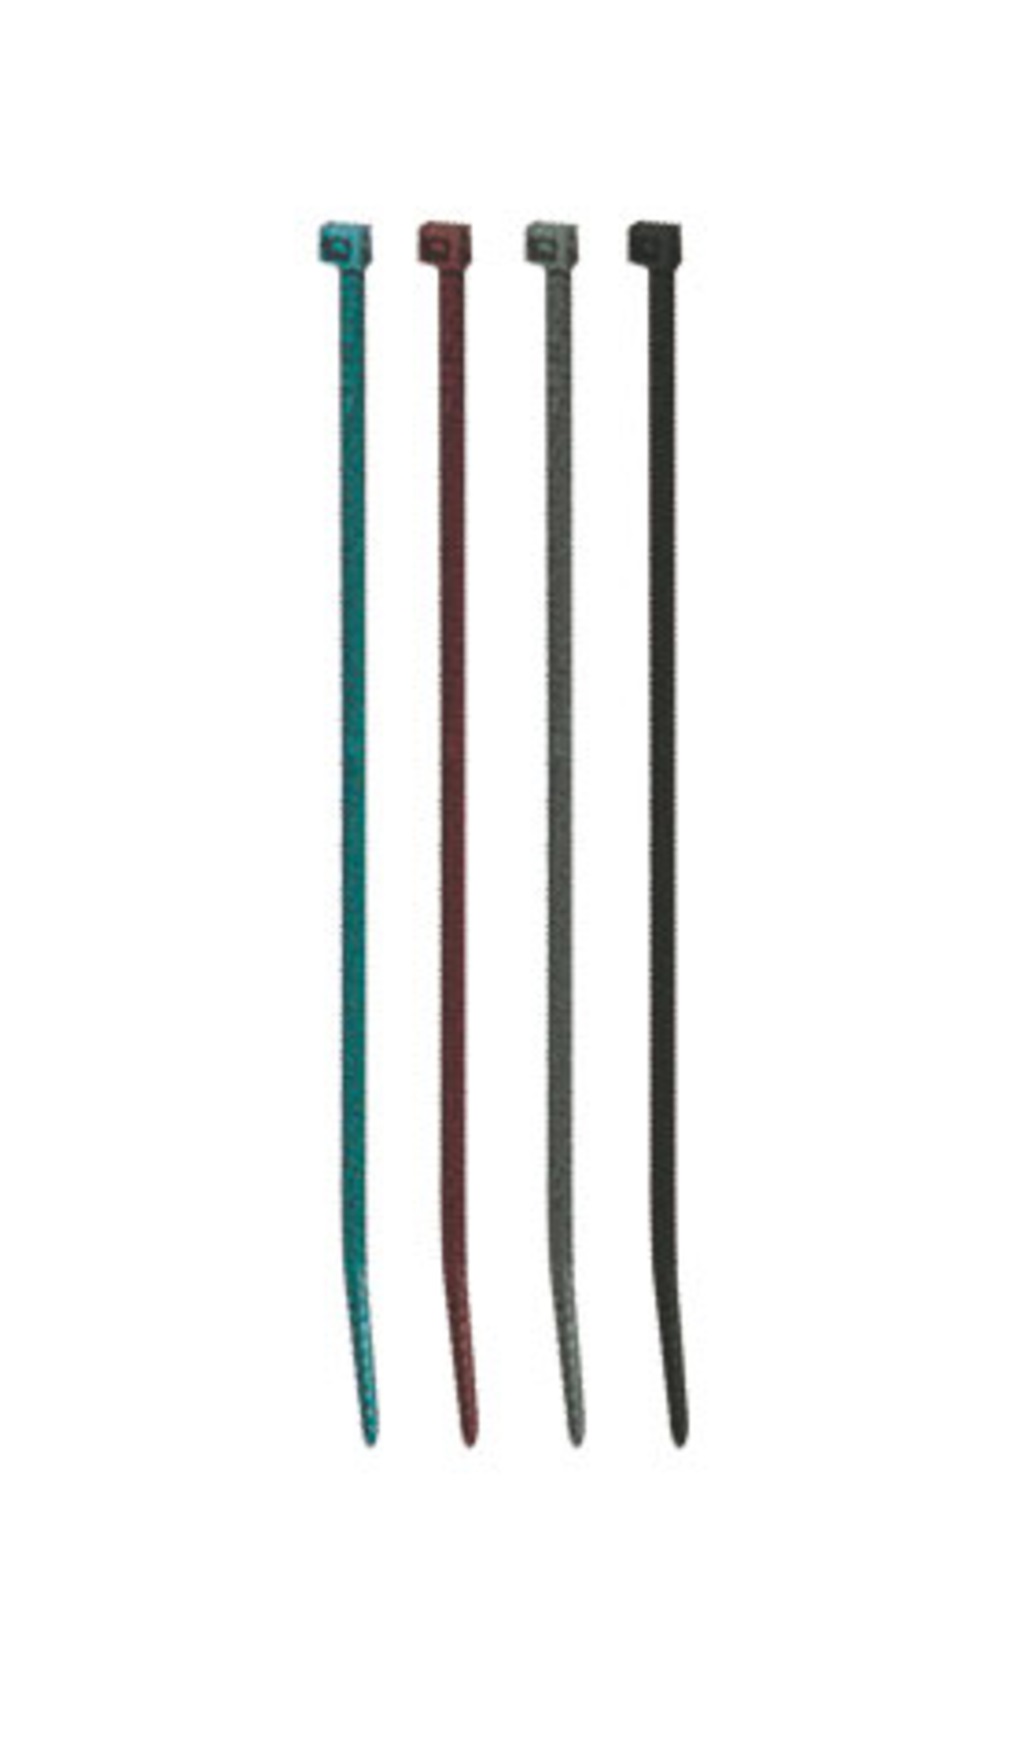 Maschenverschluss Bridfix 14 cm grün 50Stk/Packung